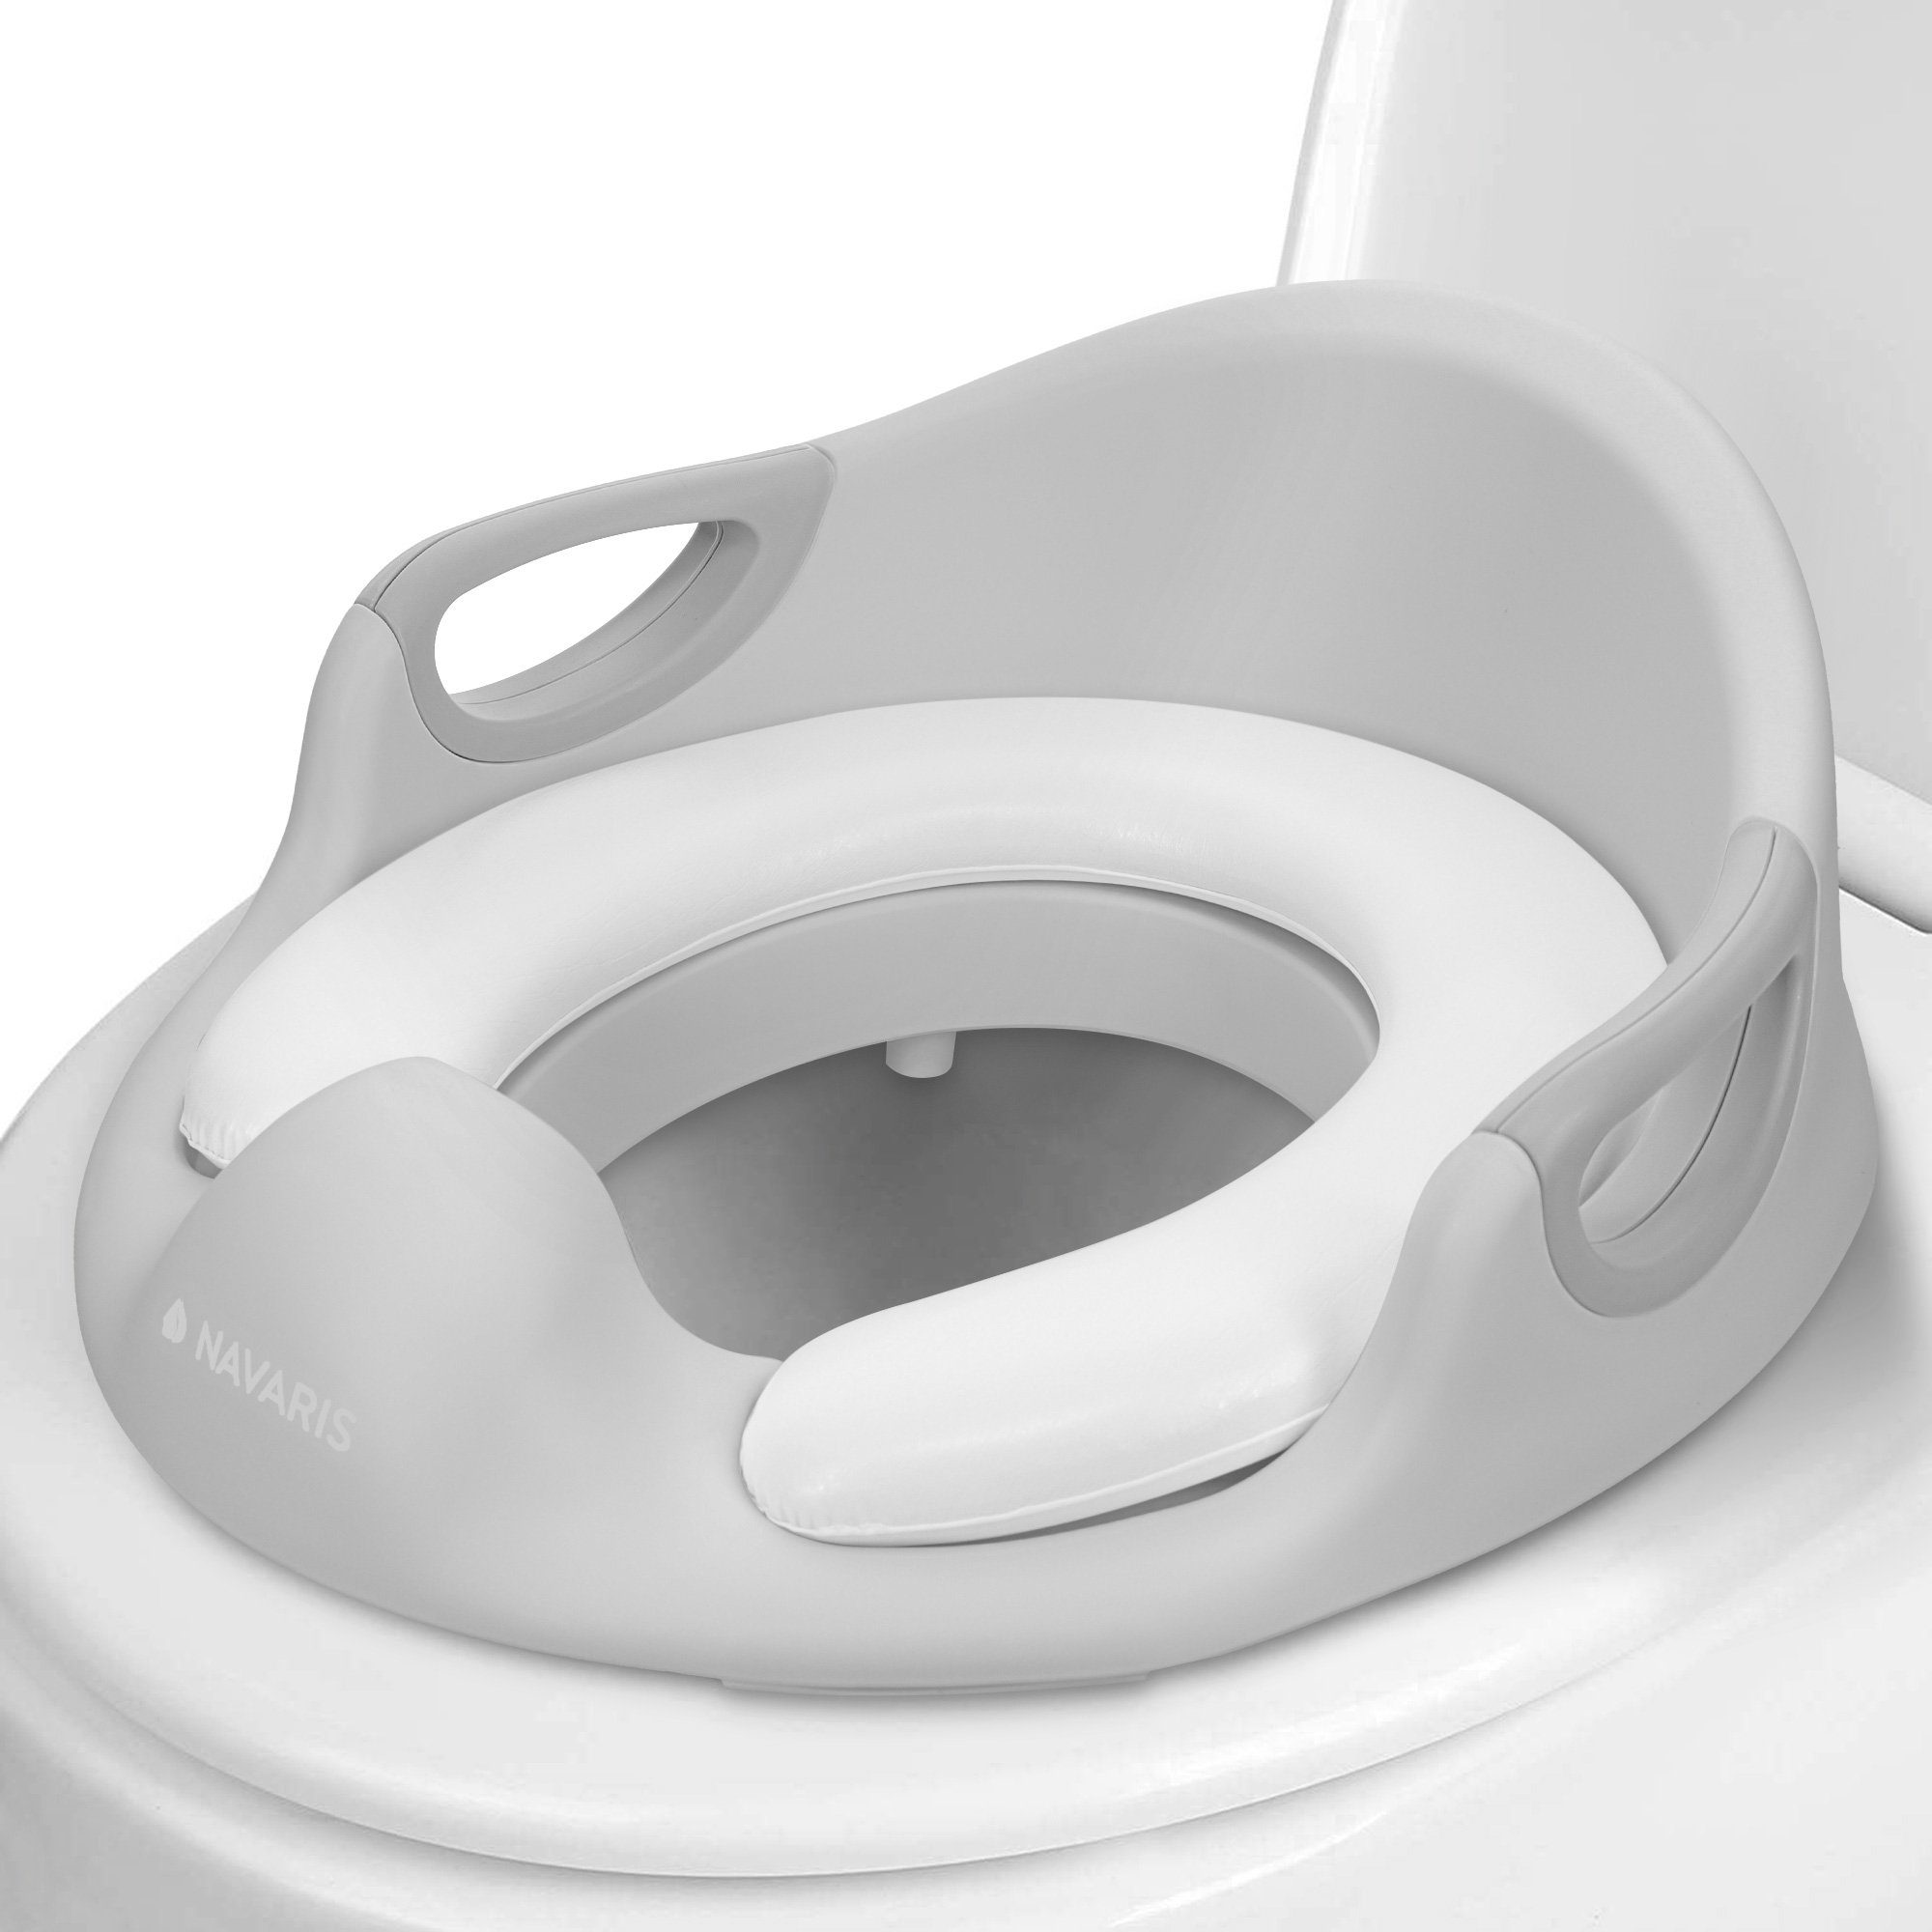 Navaris Baby-Toilettensitz Kinder Toilettensitz WC Aufsatz - 12 Monate bis 7 Jahre - Grau, 18,00 cm